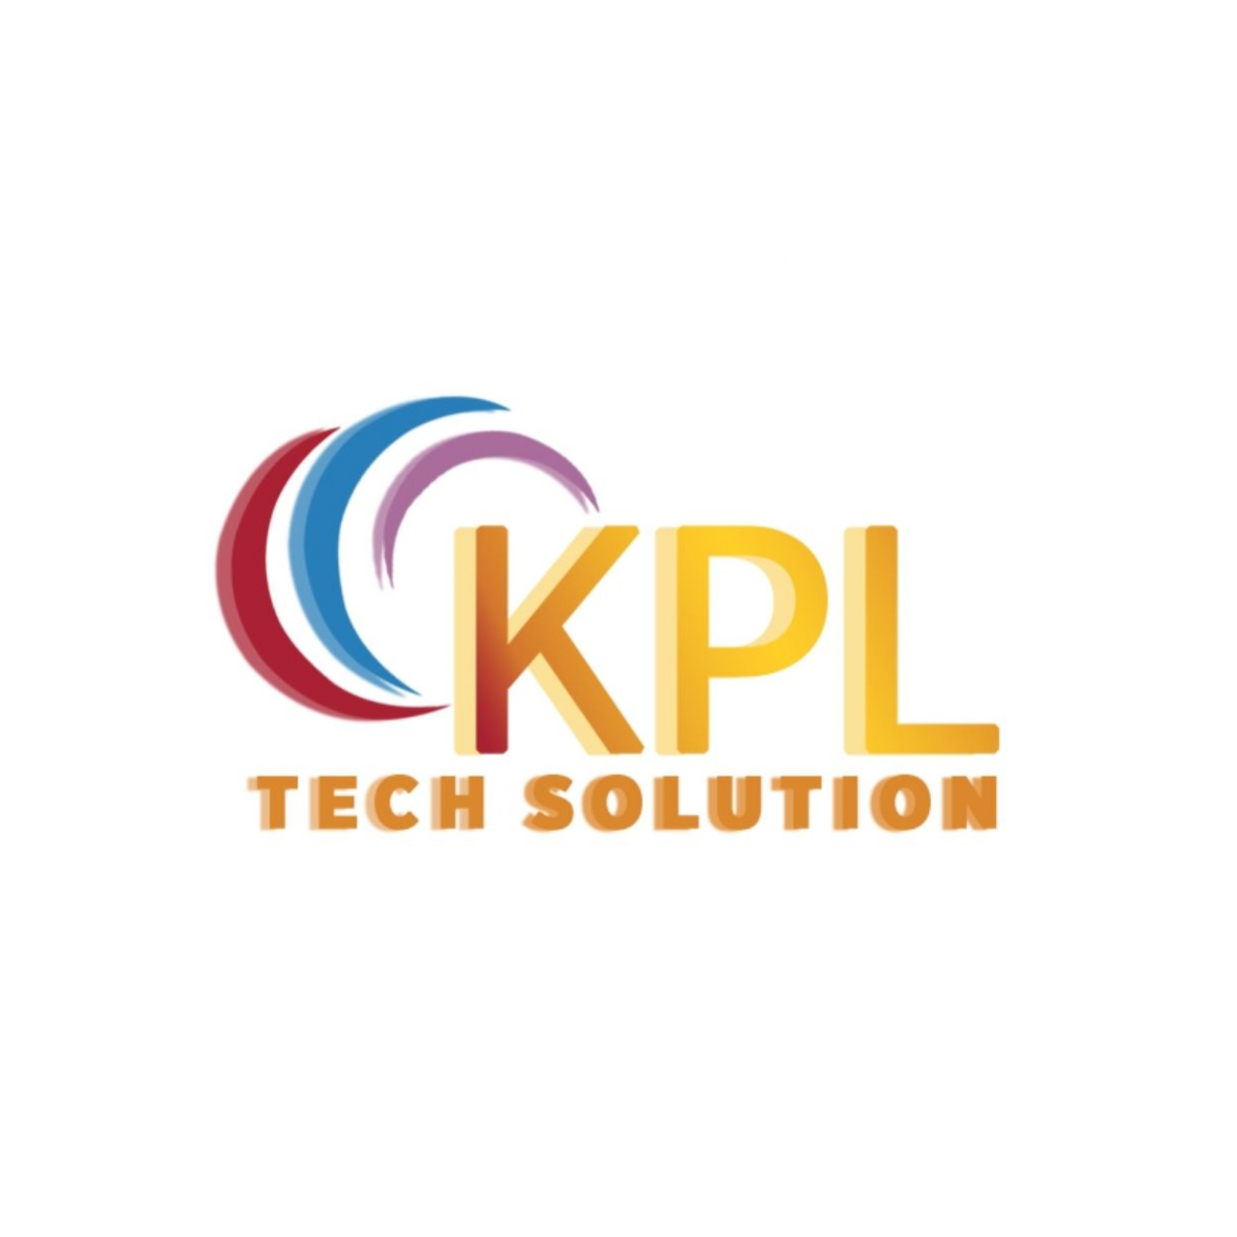 kpltech_solution